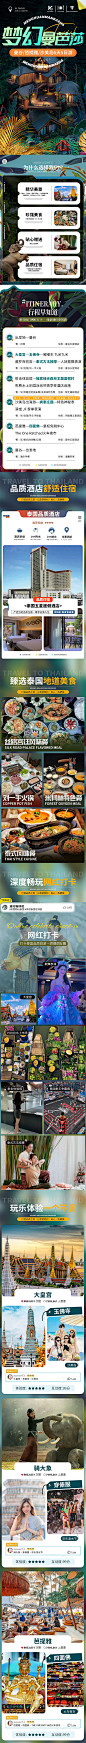 泰国旅游详情页-源文件